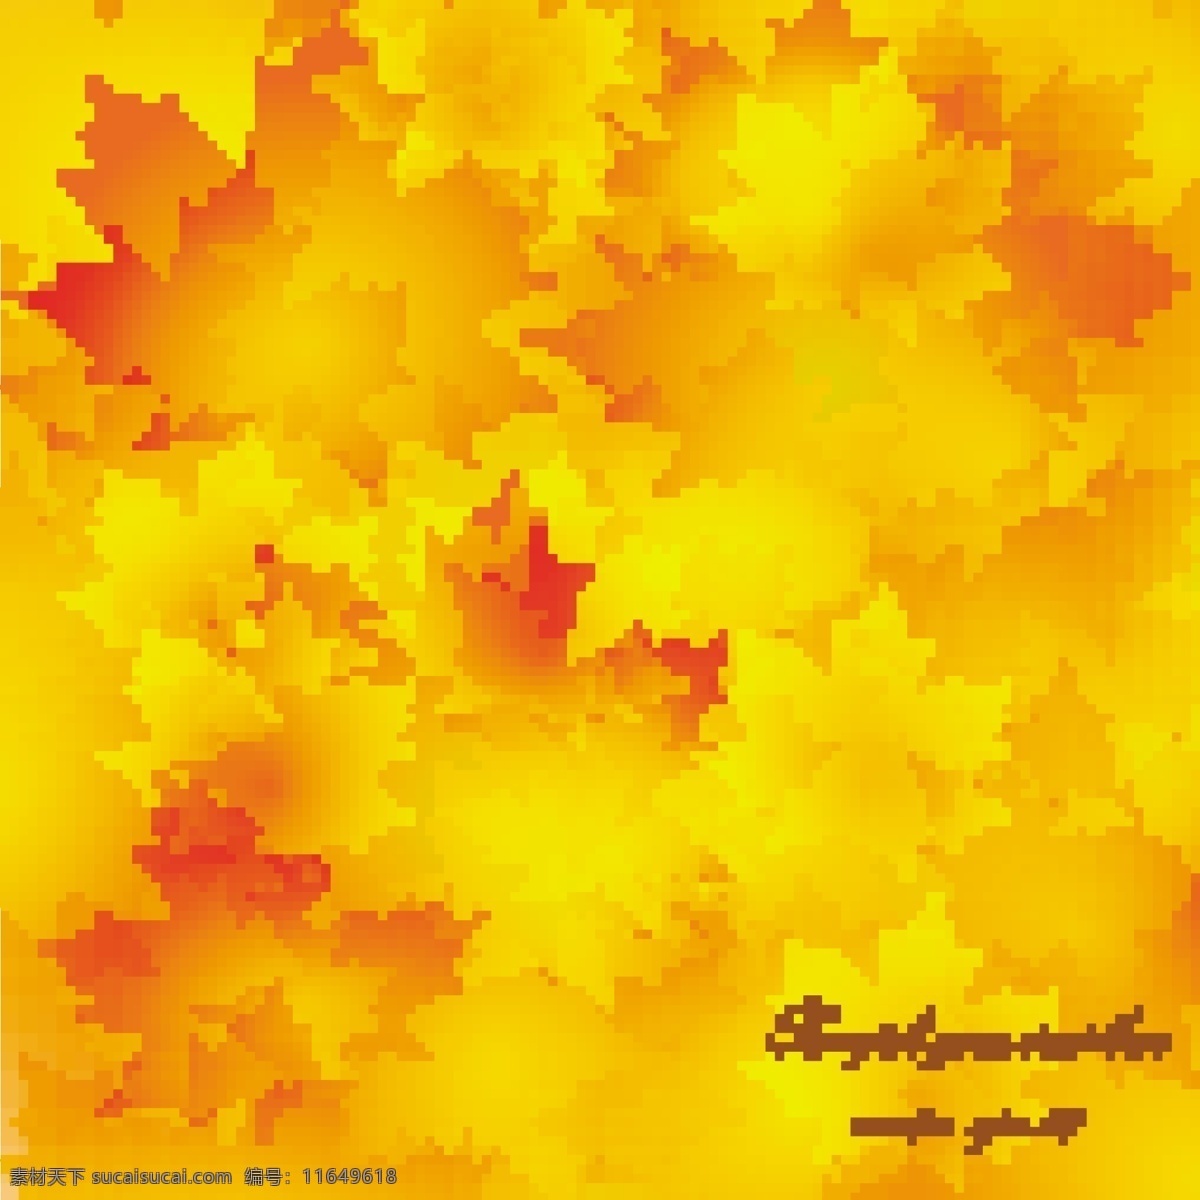 金色 秋叶 背景 树枝 叶脉 叶片 矢量 矢量图 花纹花边